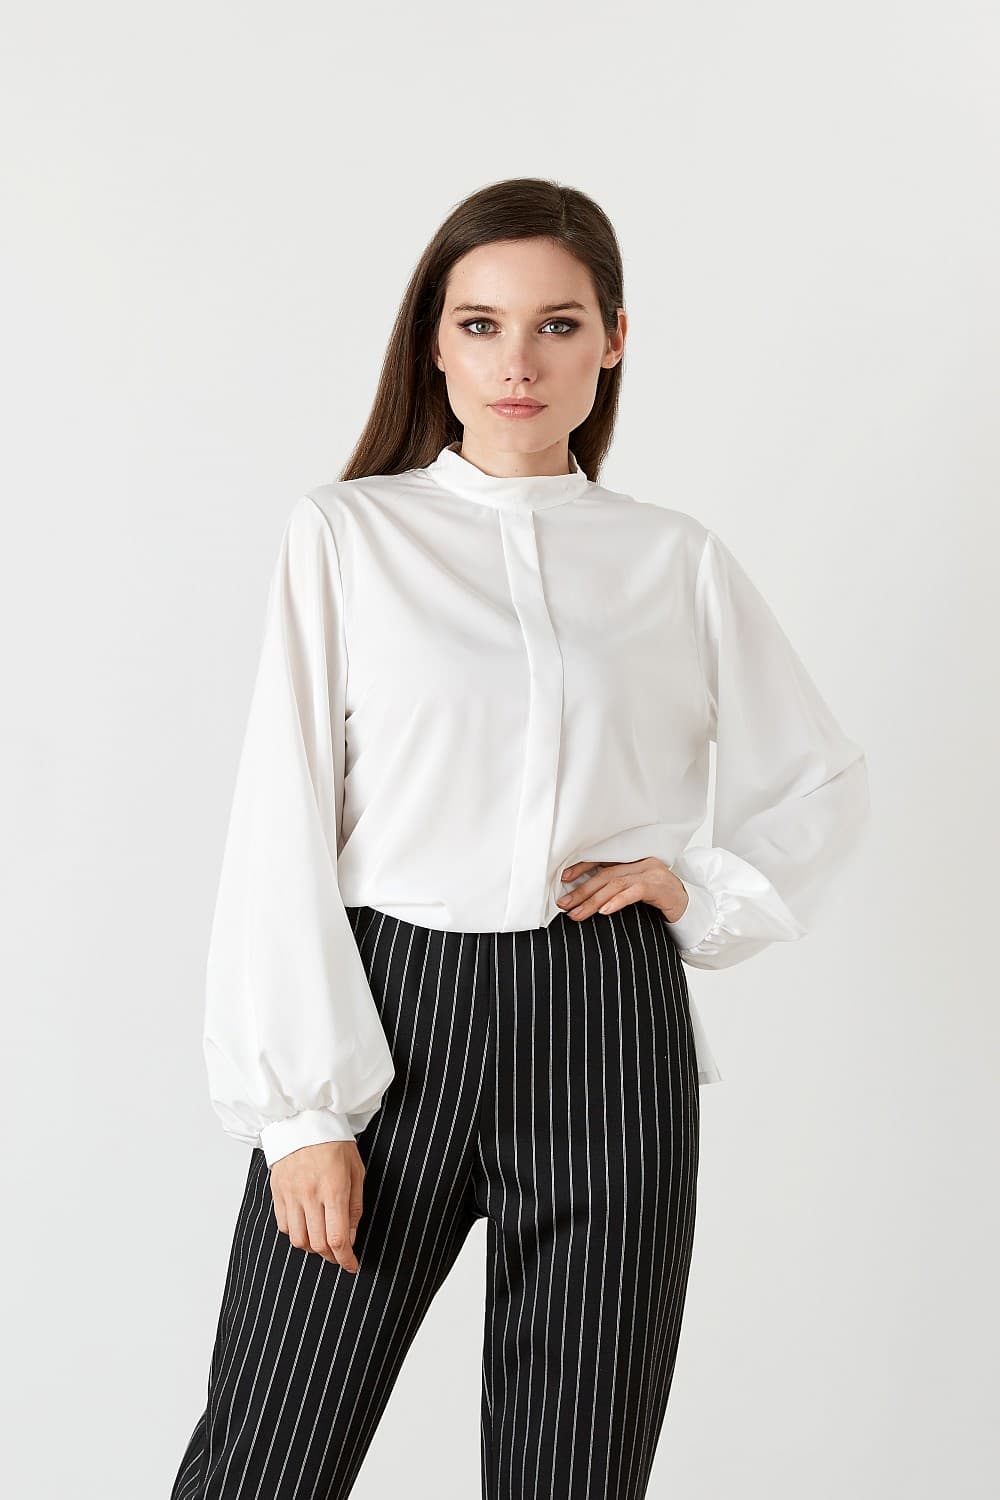 Белая вечерняя блузка с кружевной вставкой на спине Top Design  B20 063